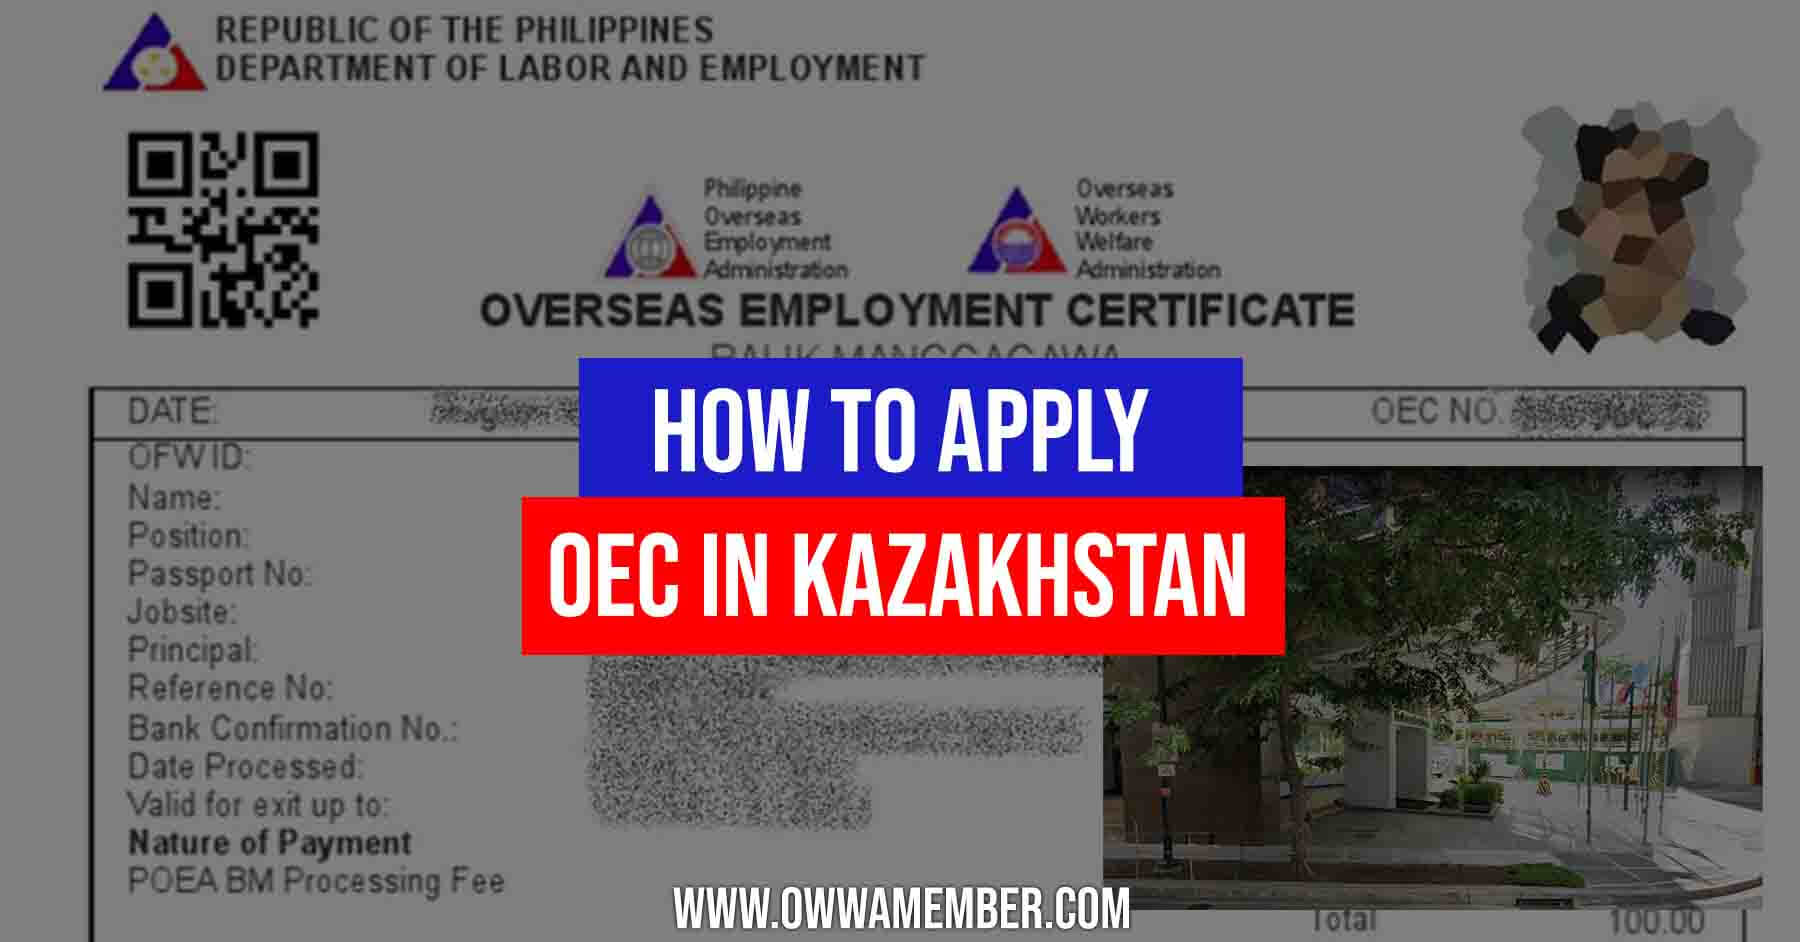 overseas employment certficate oec balik manggagawa kazakhstan